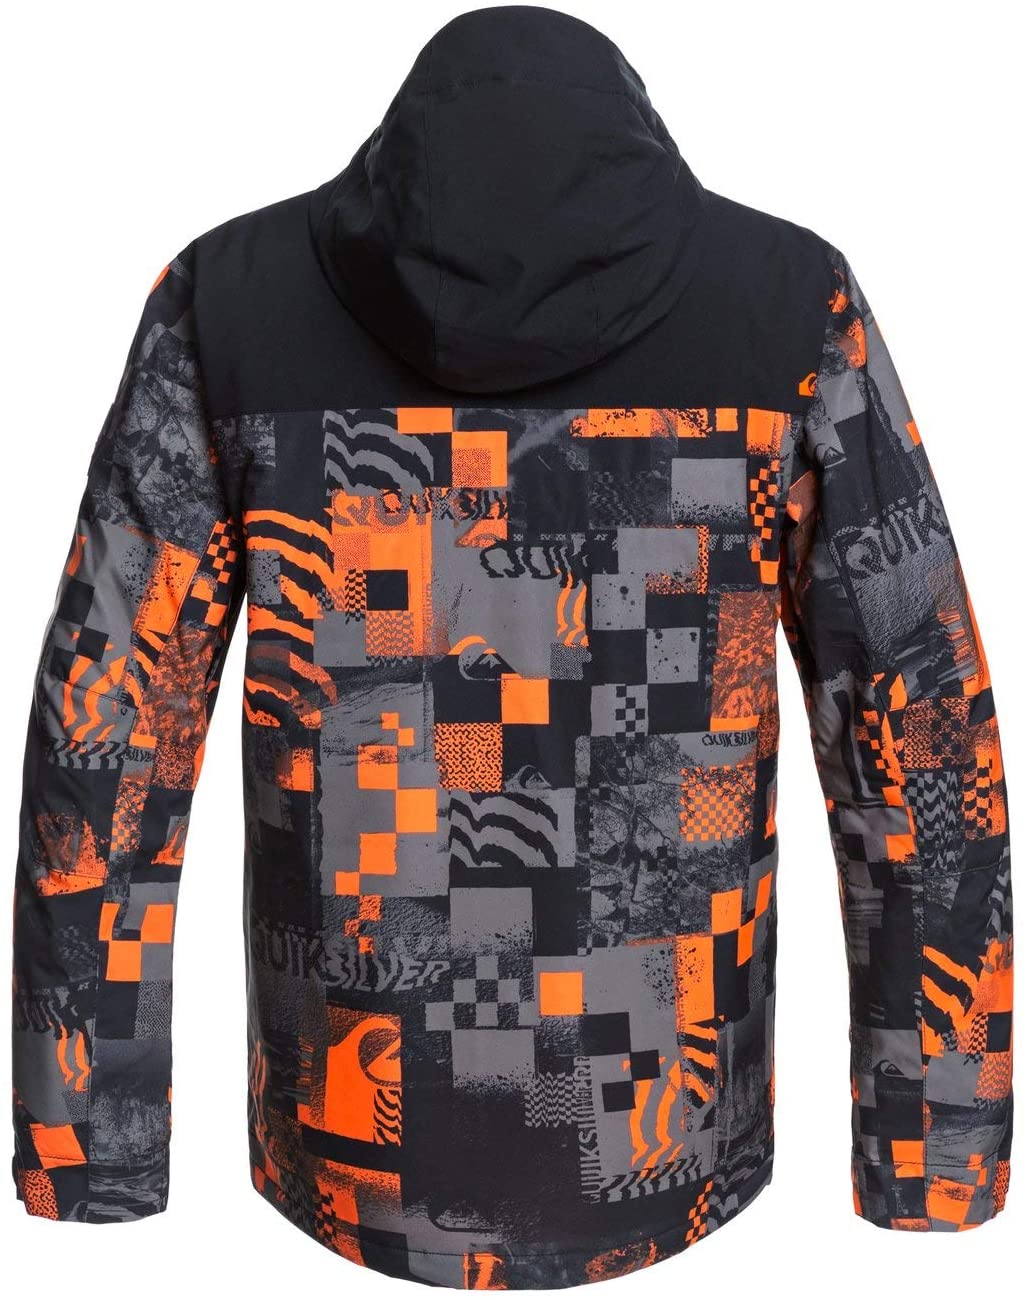 Куртка сноубордическая Quiksilver 2020-21 Morton Shocking orange radpack